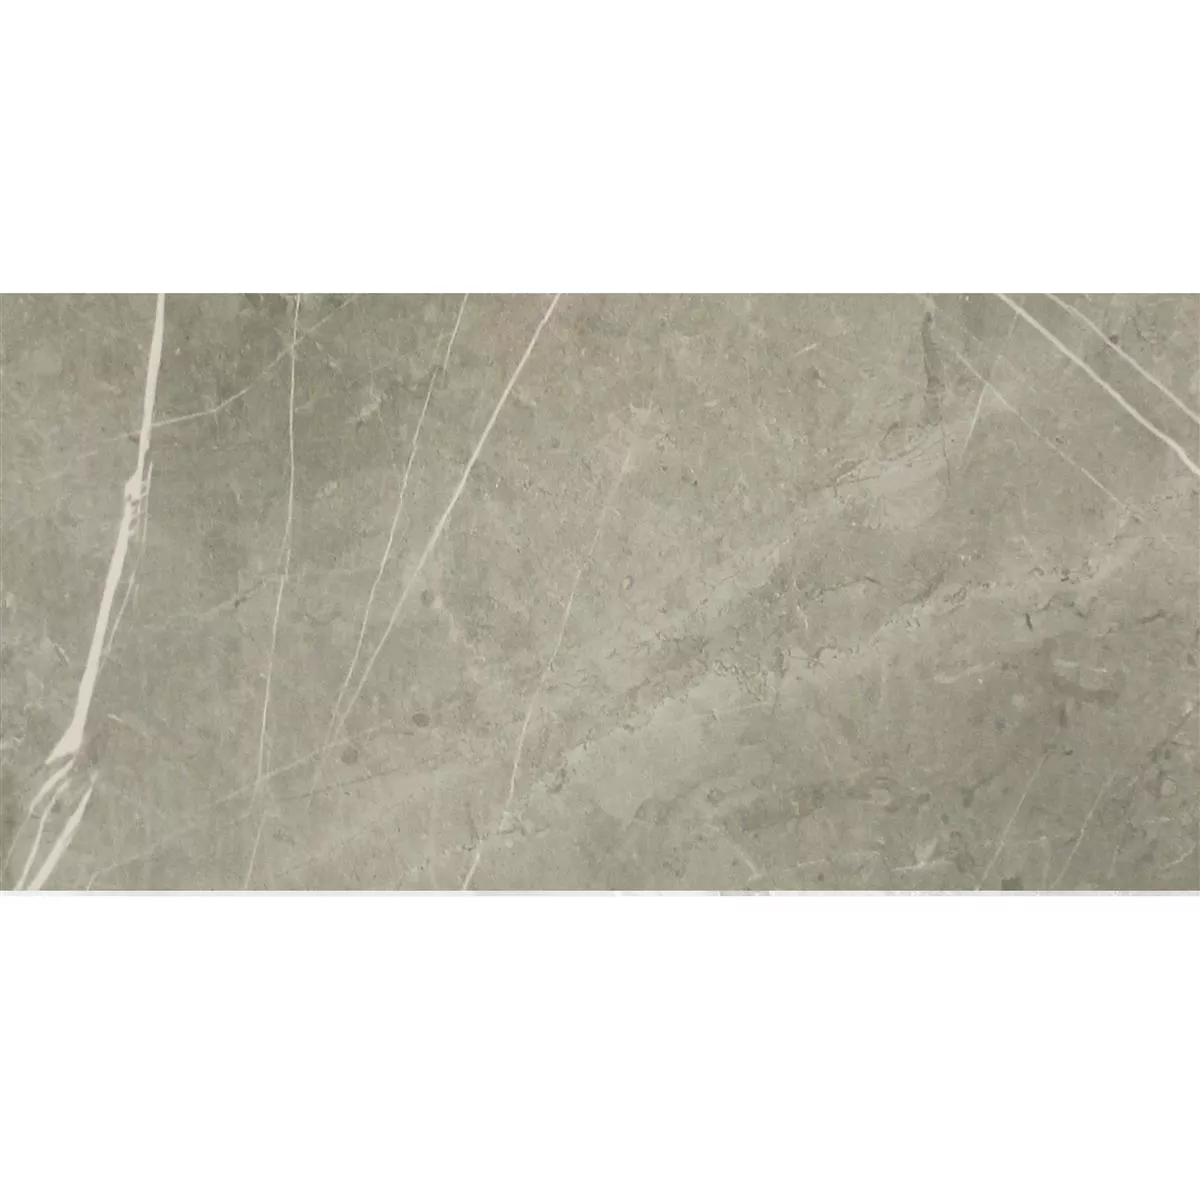 Πρότυπο Πλακάκια Δαπέδου Astara Eμφάνιση Φυσικής Πέτρας Αμεμπτος Grey 30x60cm